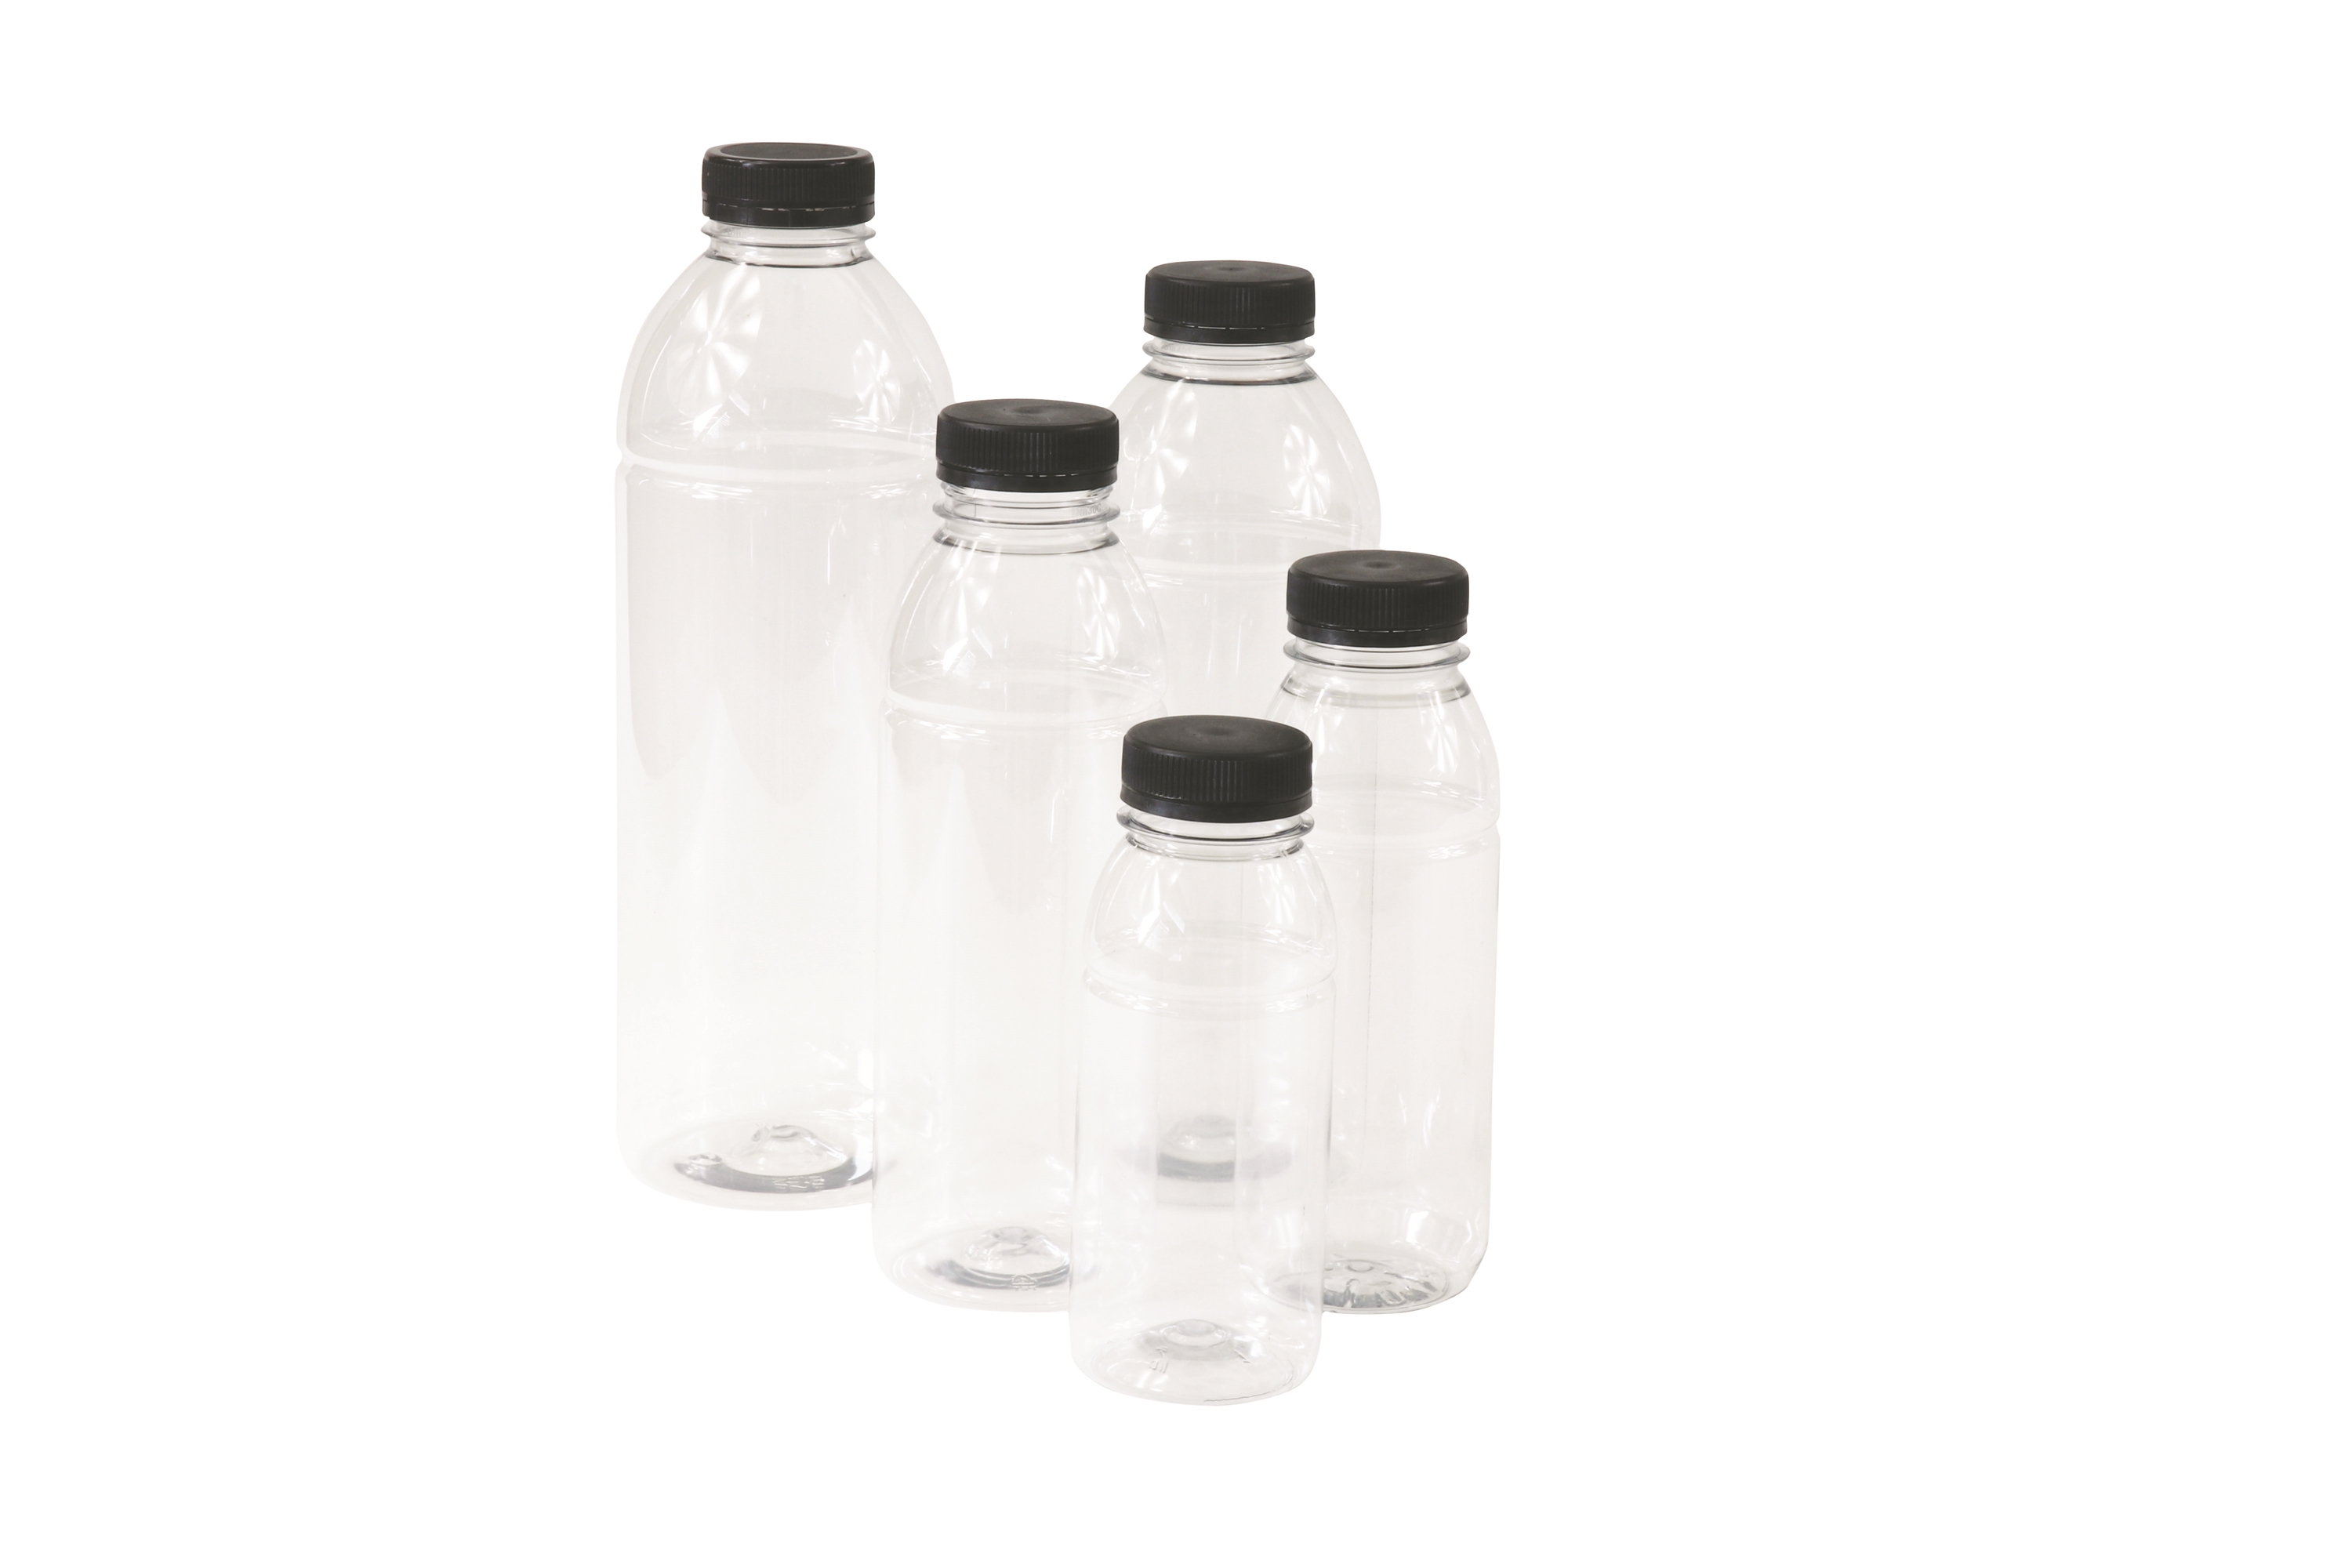 Afbeelding voor categorie Plastic flessen